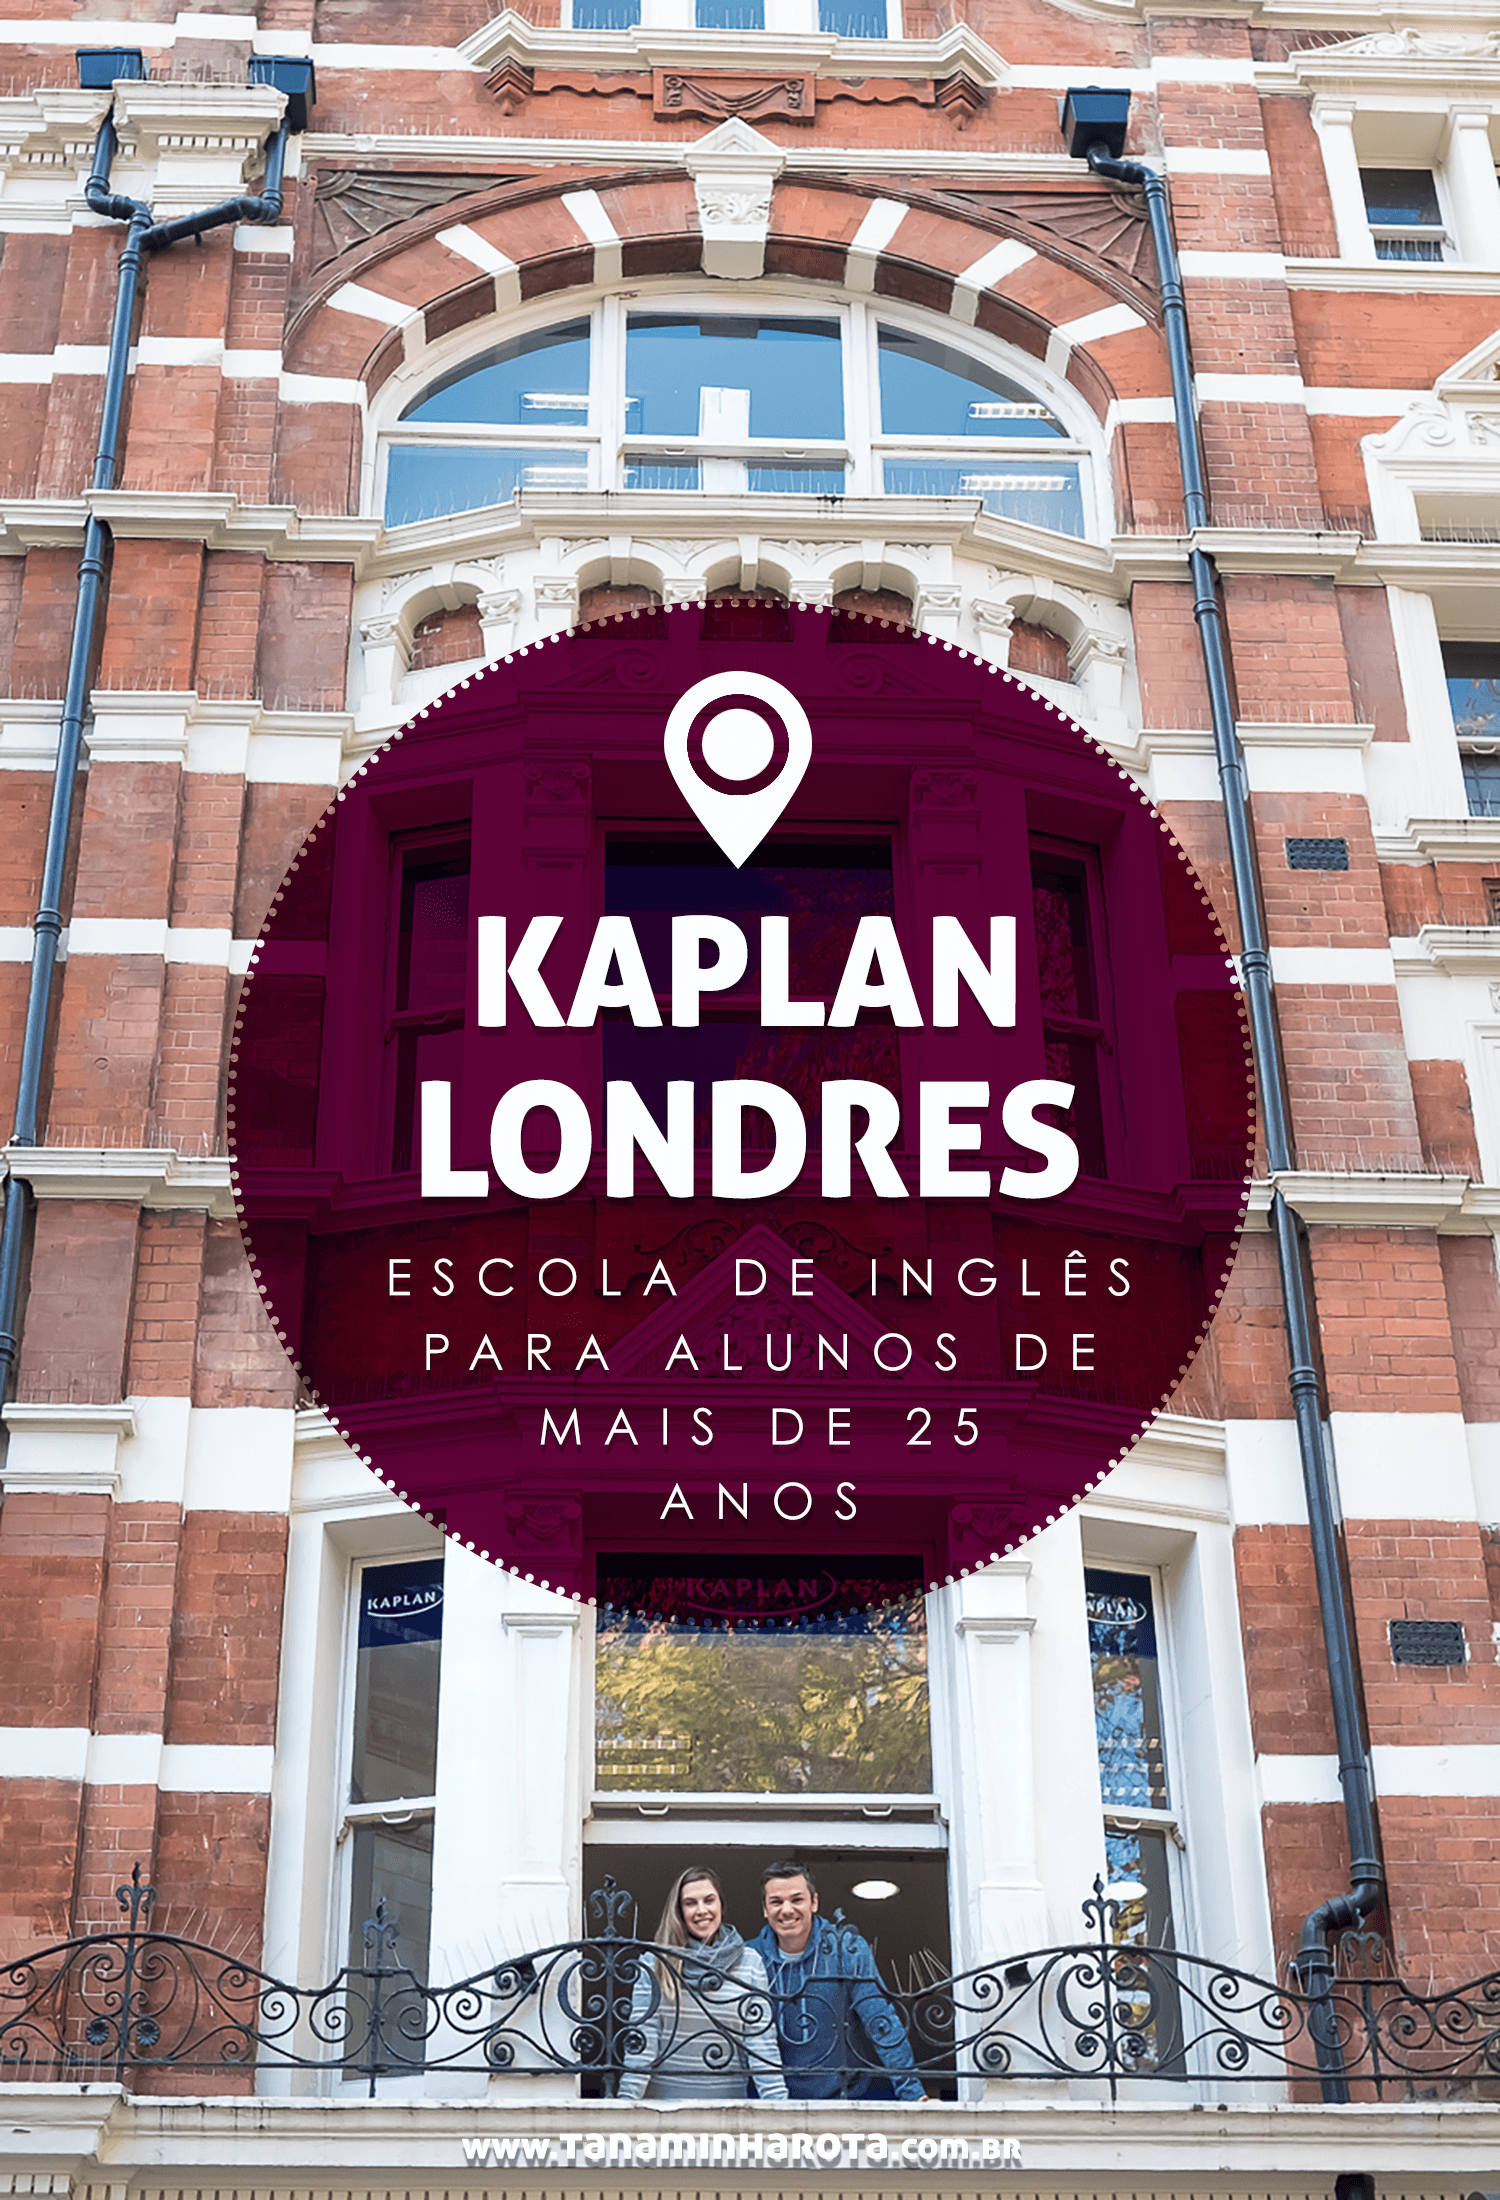 Descubra Como é estudar na Kaplan Londres Leicester Square, uma escola de inglês para maiores de 25 anos! #kaplan #londres #intercambio #europa #viagem